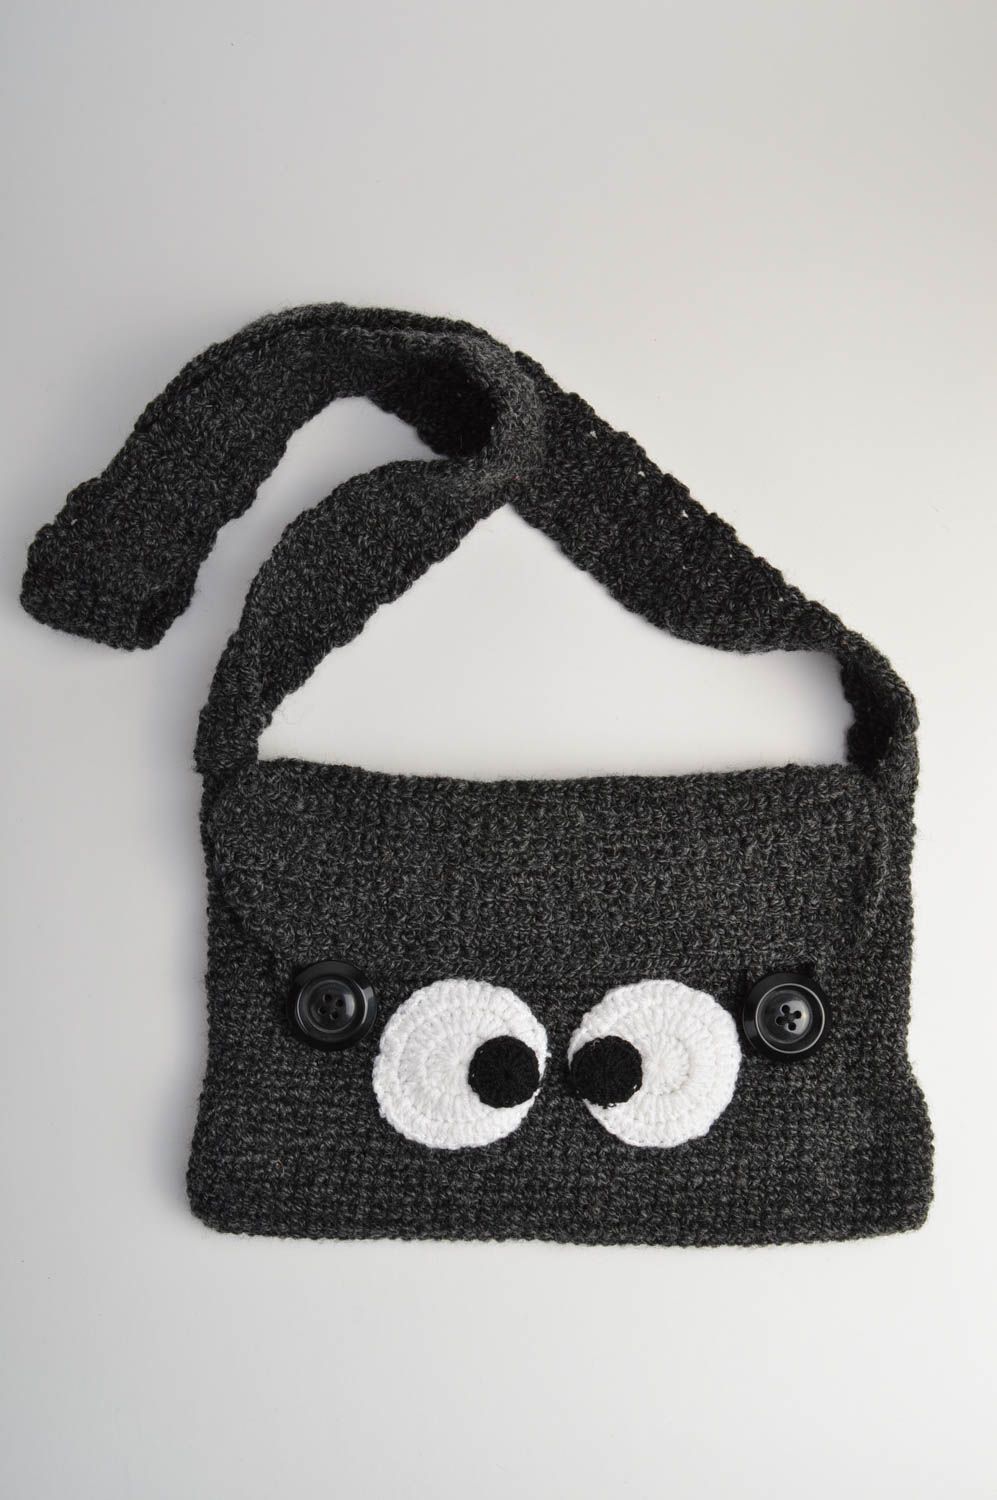 Tasche handgemacht gehäkelte Tasche  Tasche für Kinder in Dunkelgrau mit Augen foto 3